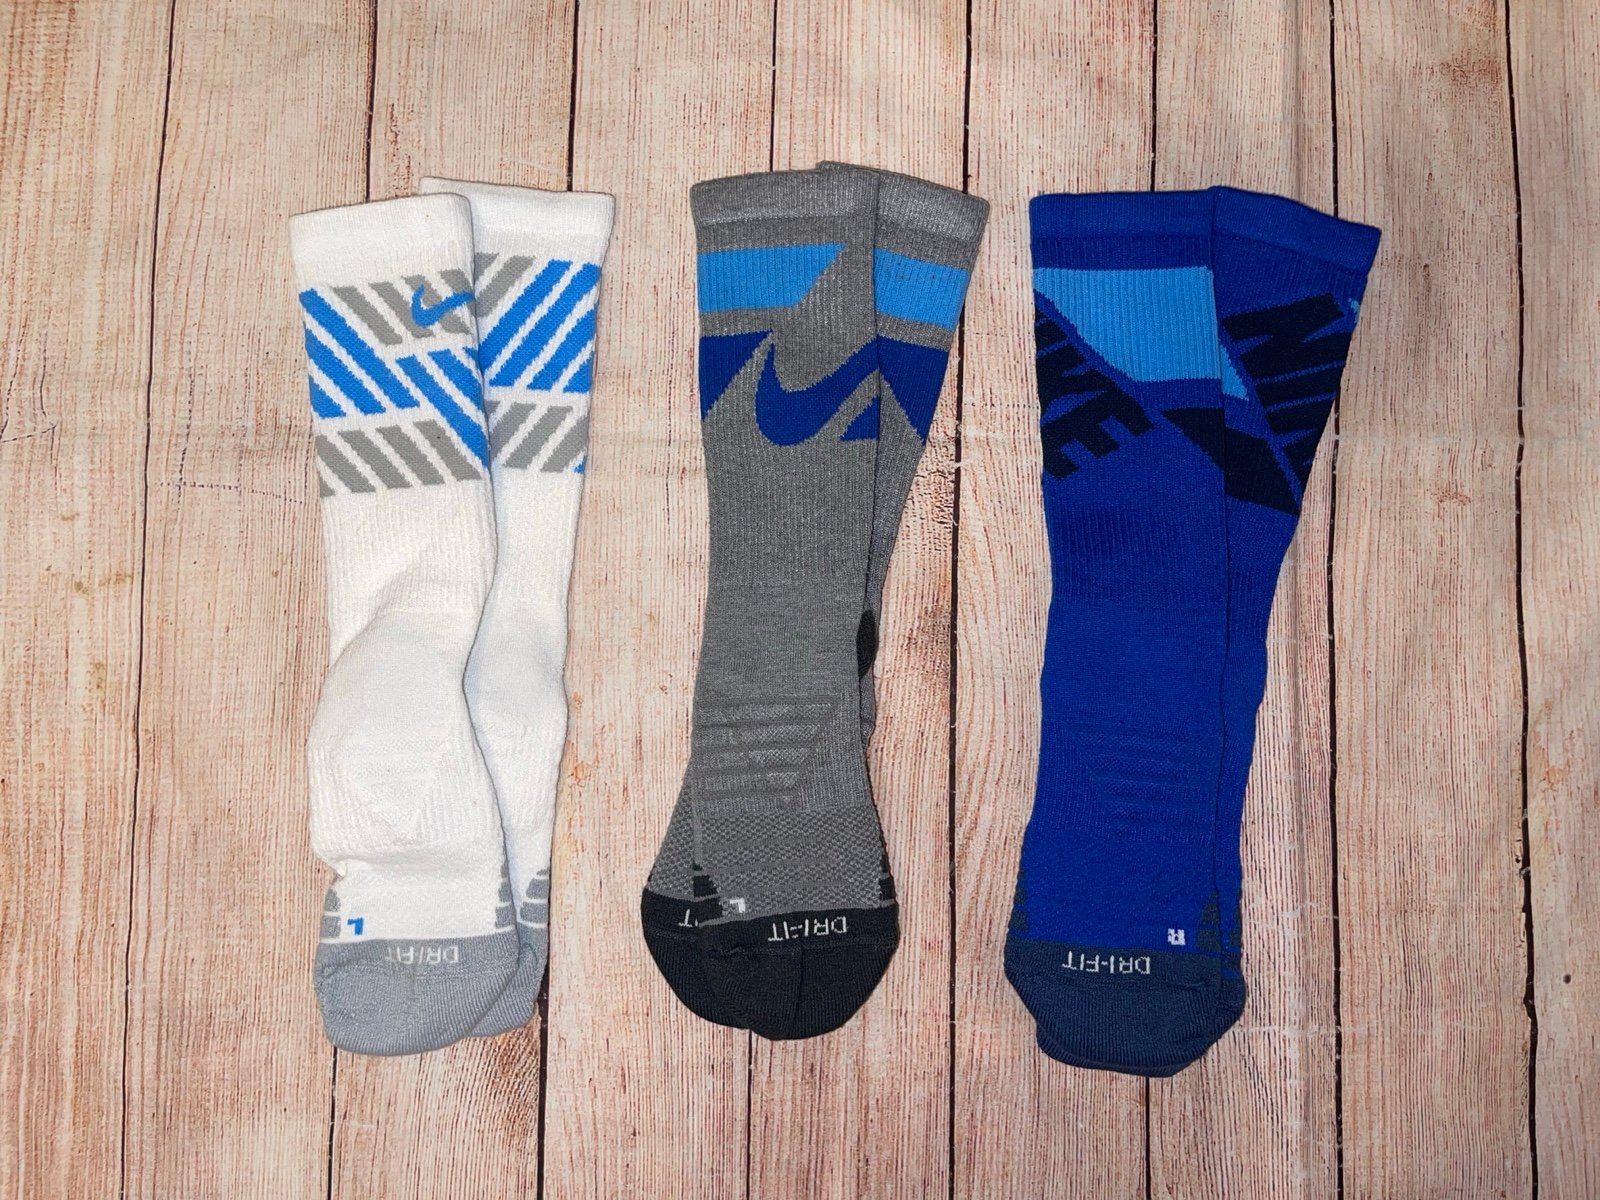 Boys Youth Medium Nike Dri-Fit Crew Socks (3 Pair) NEW J2kCNi4BS